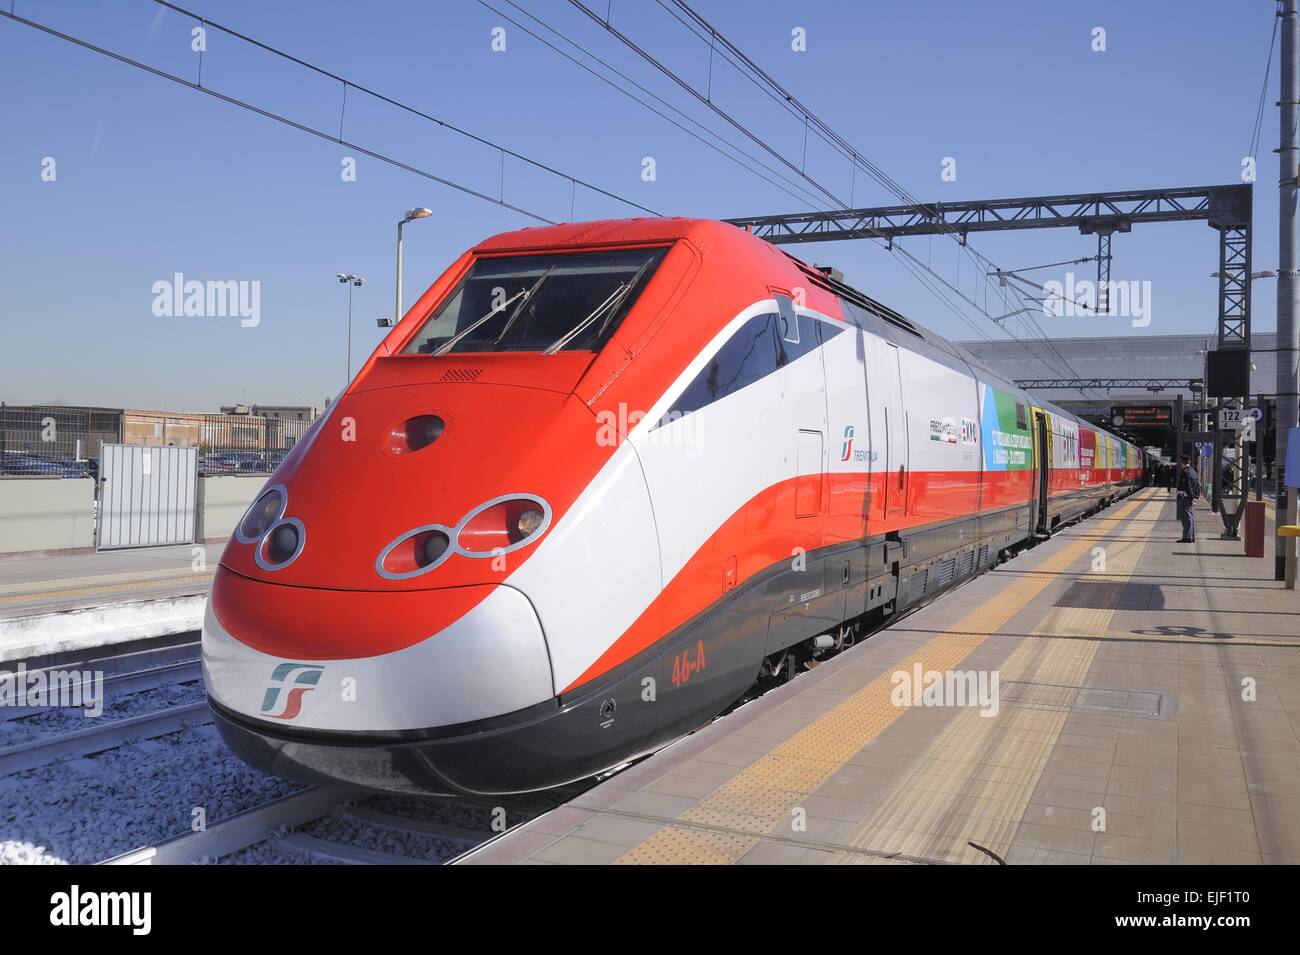 Milan, la liaison avec le train à grande vitesse dans le Frecciarossa Trenitalia Rho Fiera EXPO Universelle de 2015 Banque D'Images